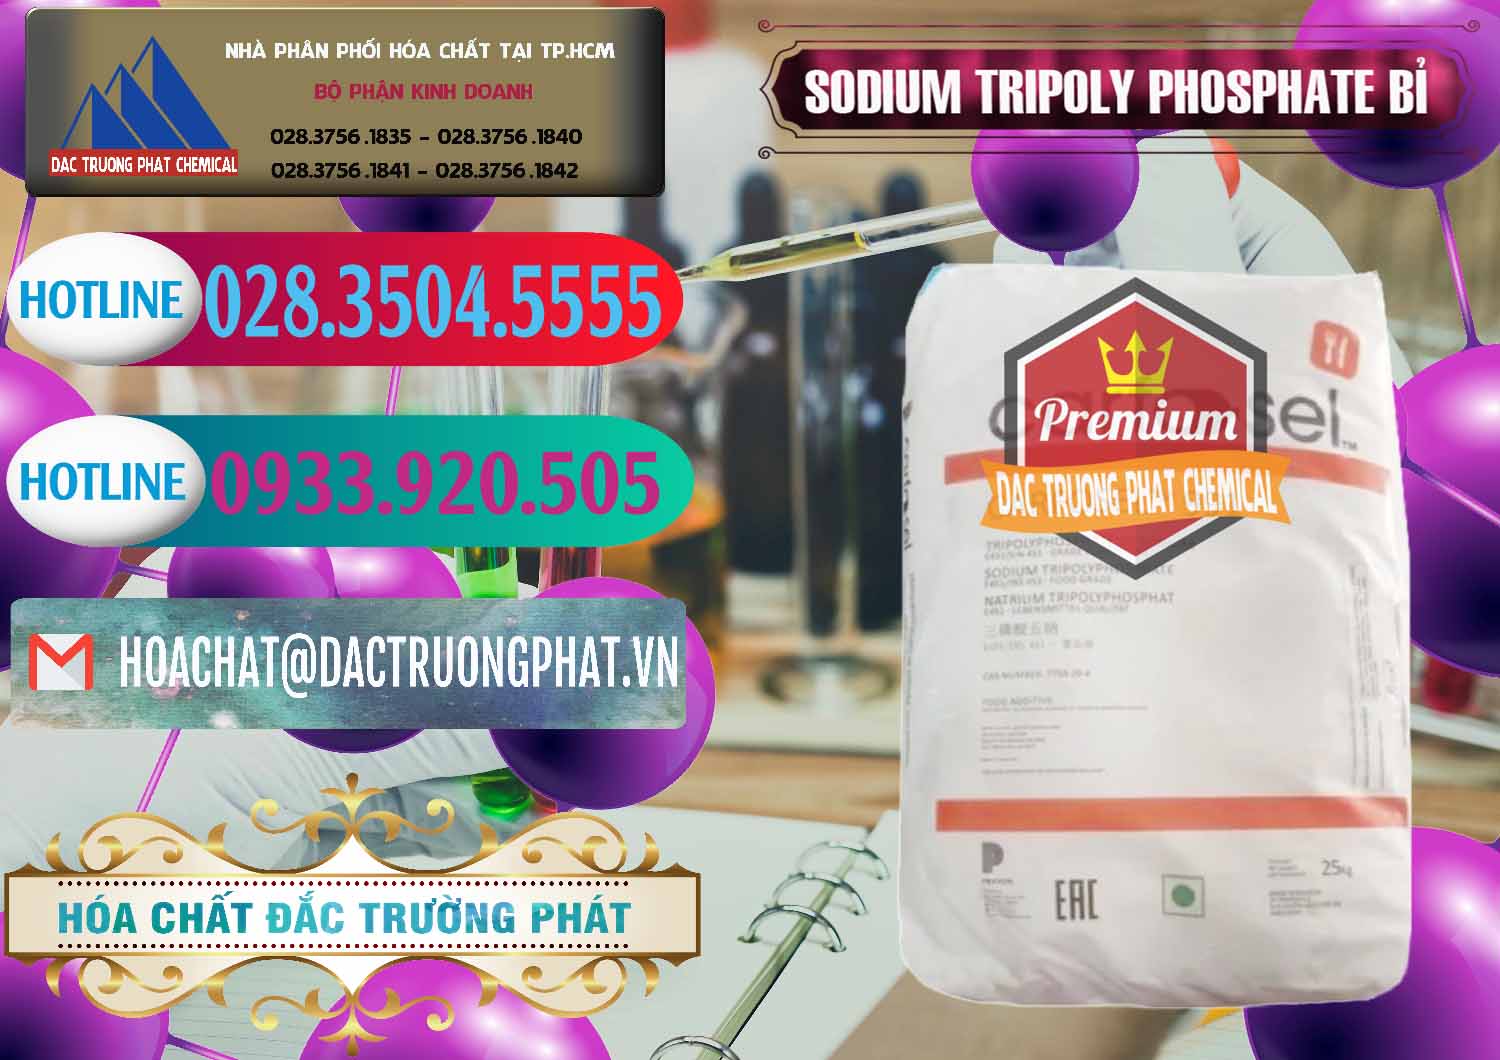 Cty cung cấp _ bán Sodium Tripoly Phosphate - STPP Carfosel 991 Bỉ Belgium - 0429 - Công ty chuyên cung cấp và nhập khẩu hóa chất tại TP.HCM - truongphat.vn